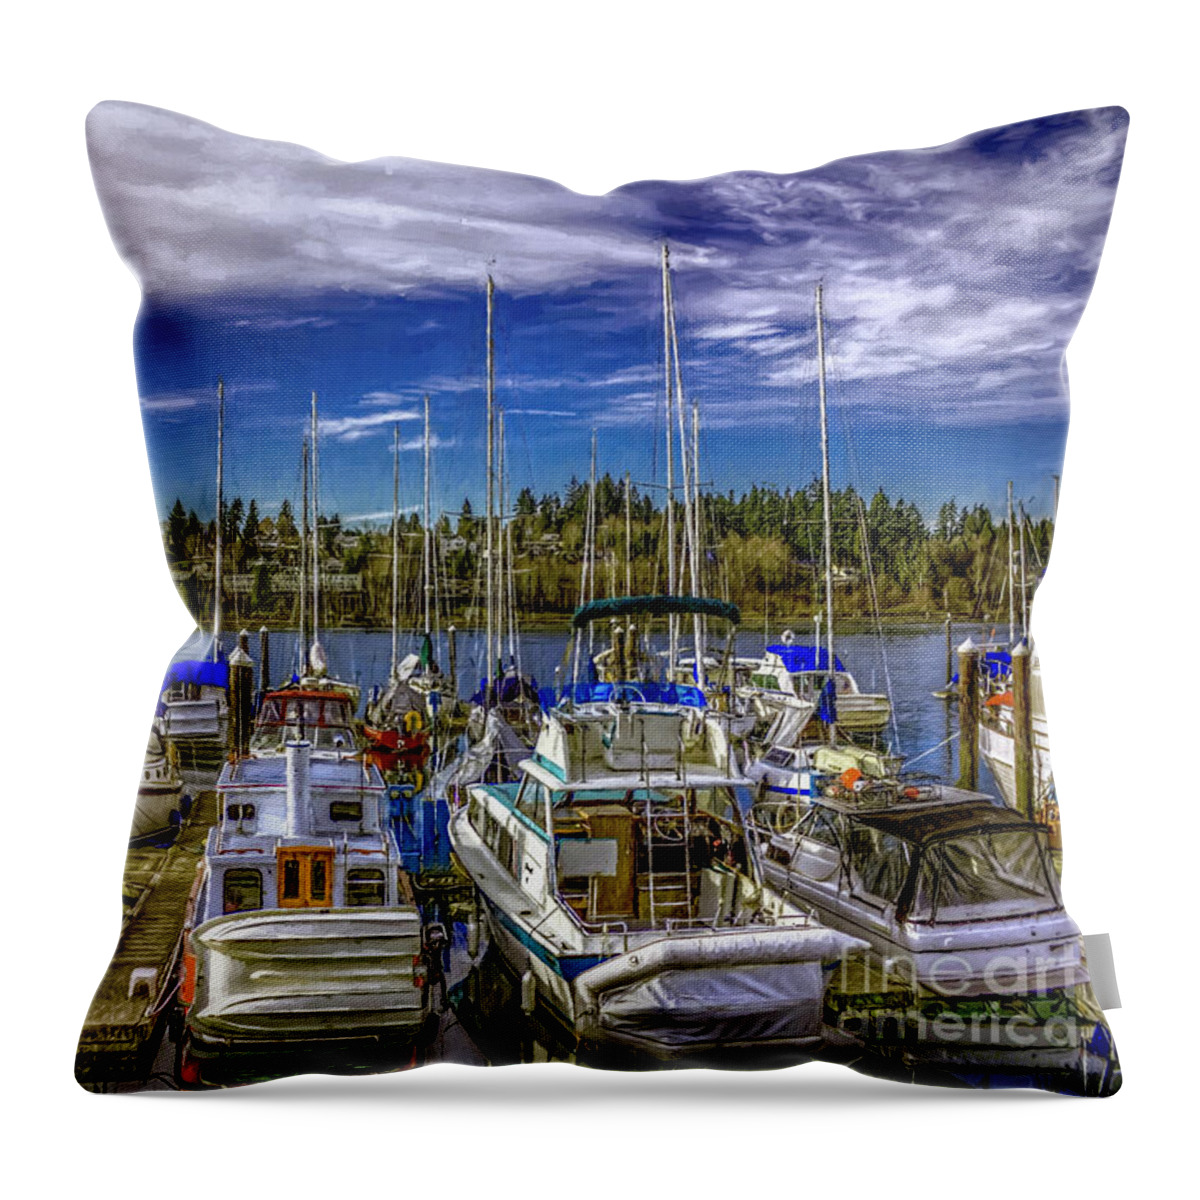 Sailboats Throw Pillow featuring the digital art Sky Embrace by Jean OKeeffe Macro Abundance Art